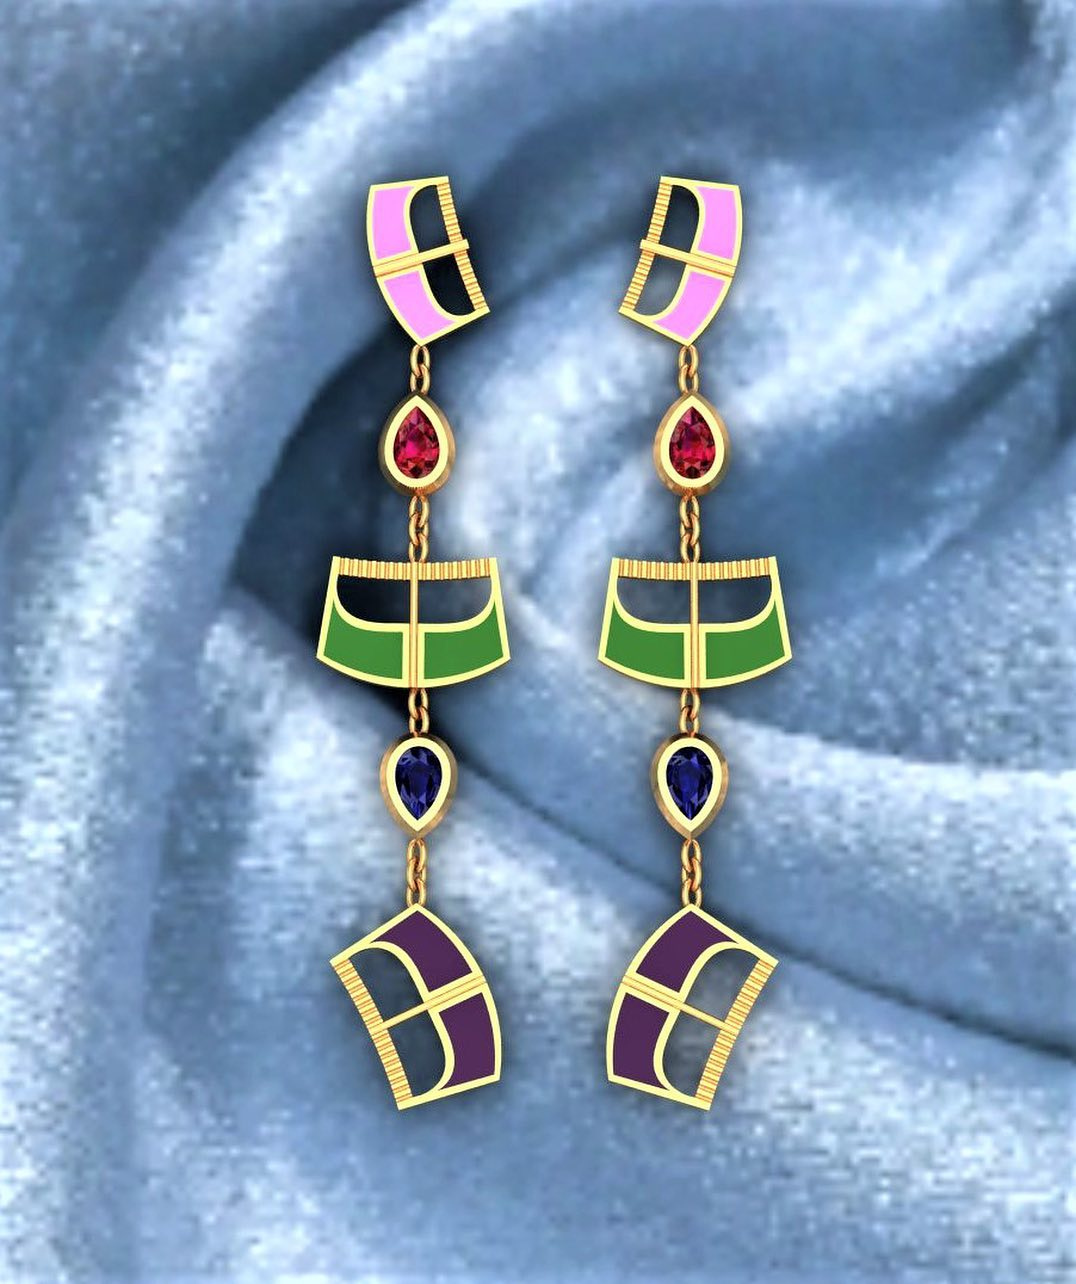 Qatari jewellery designers